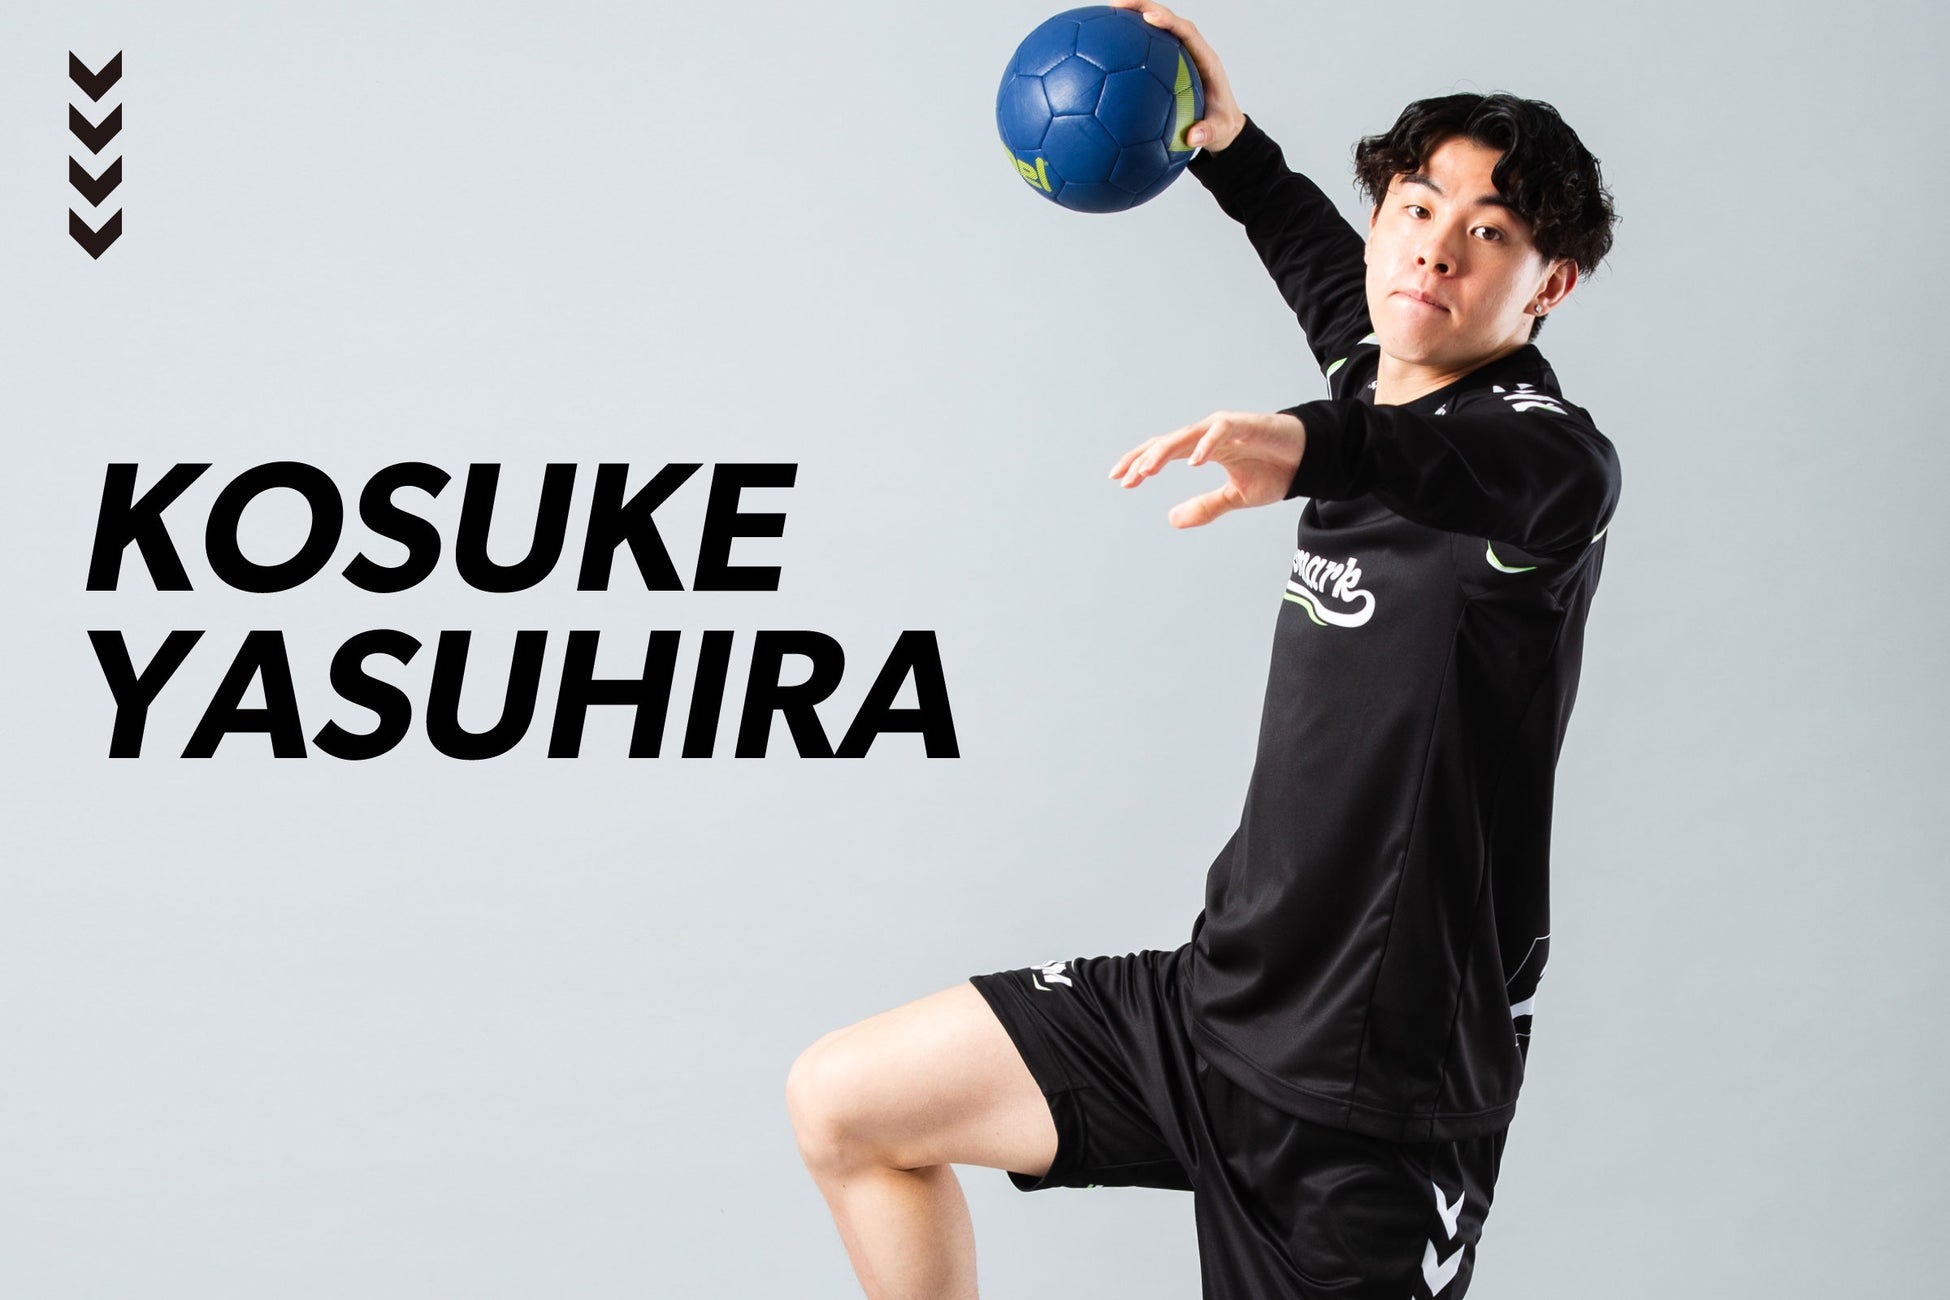 ハンドボール日本代表 安平光佑選手インタビューを公開